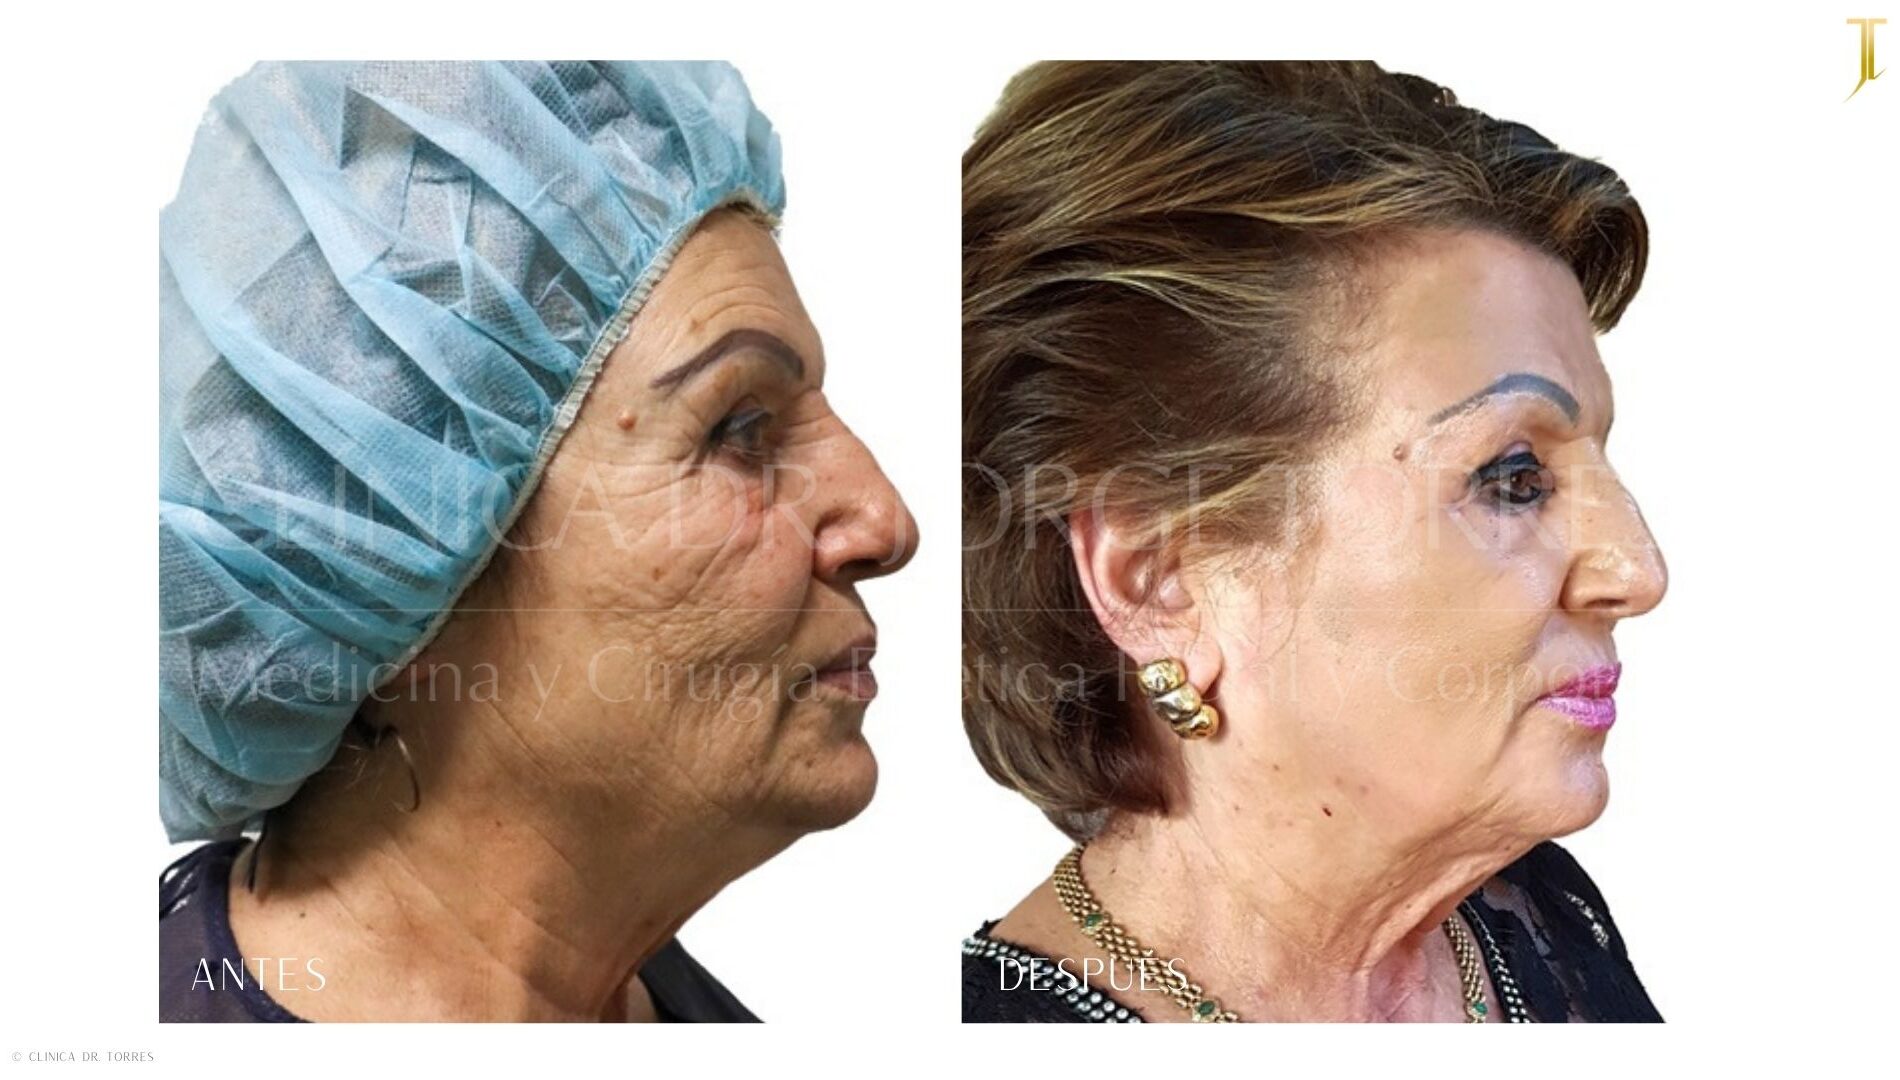 Peeling Profundo. Medicina y Cirugía Estética Facial y Corporal en Valencia Dr. Jorge Torres